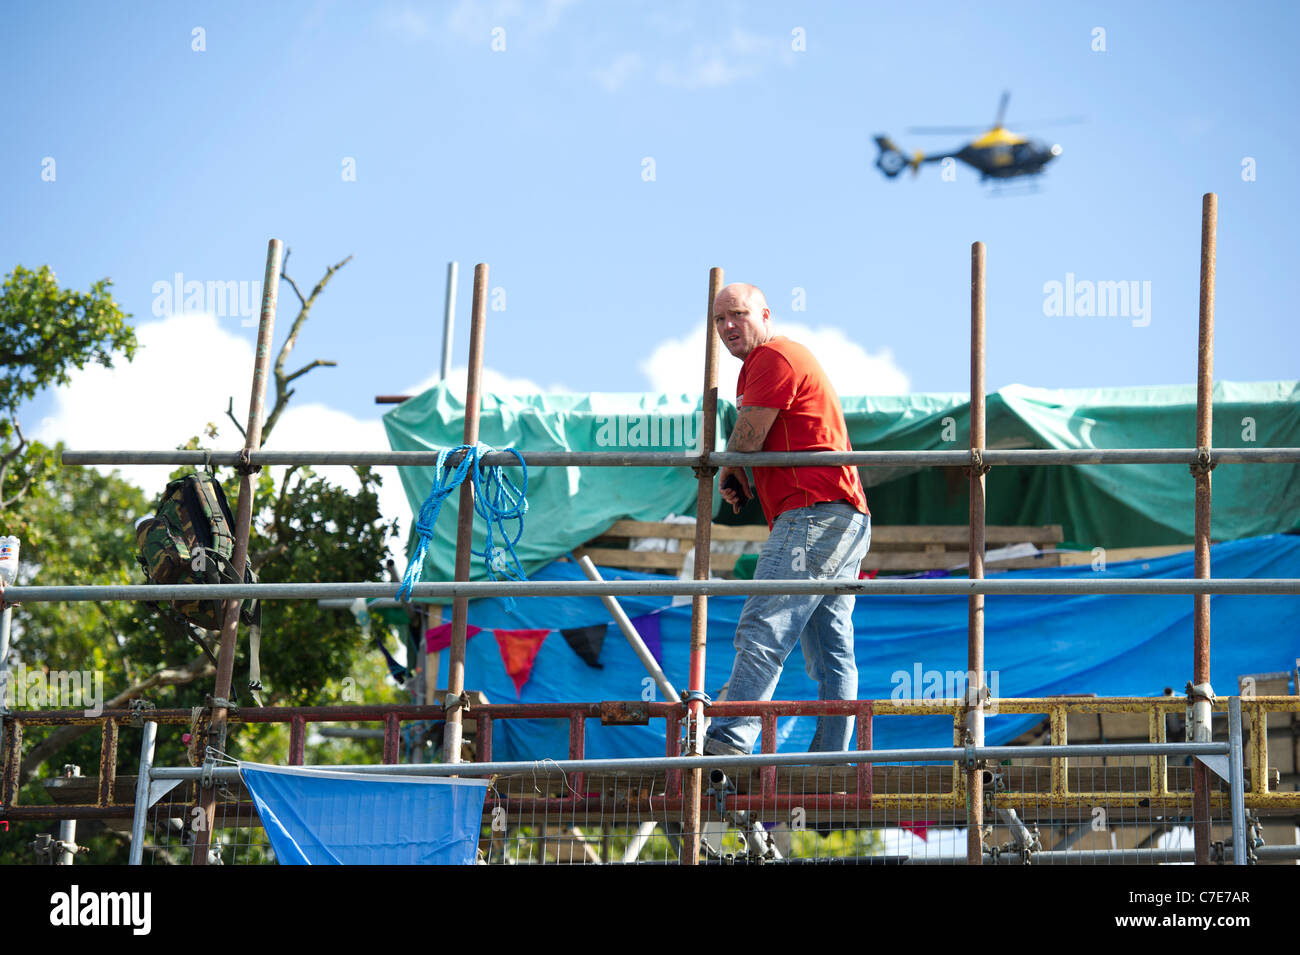 Dale Farm Räumung. Mann auf Gerüst überragen verbarrikadiert Eintrag zu Reisenden Website als Polizei-Hubschrauber-Monitore-Situation. Stockfoto